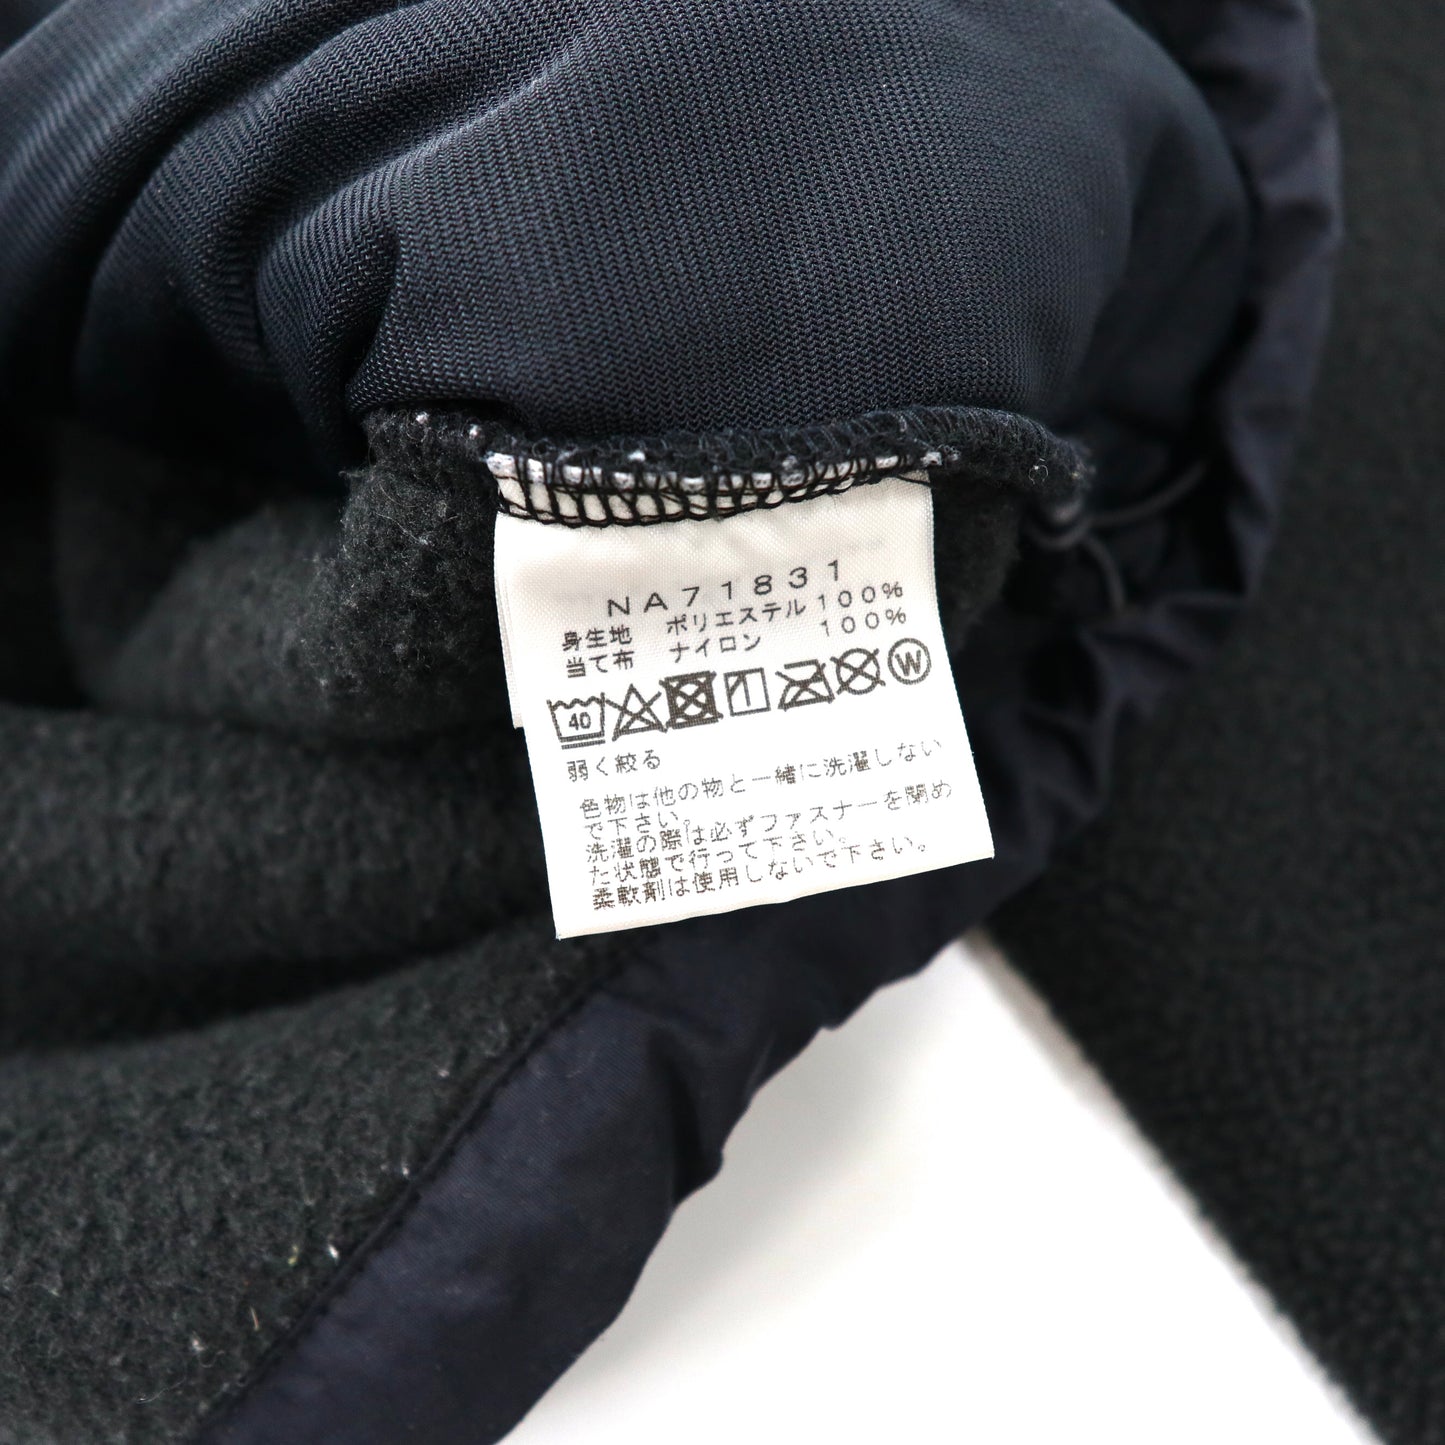 THE NORTH FACE デナリジャケット ナイロン切り替えフリースジャケット S ブラック ポリエステル ロゴ刺繍 DENALI JACKET NA71831